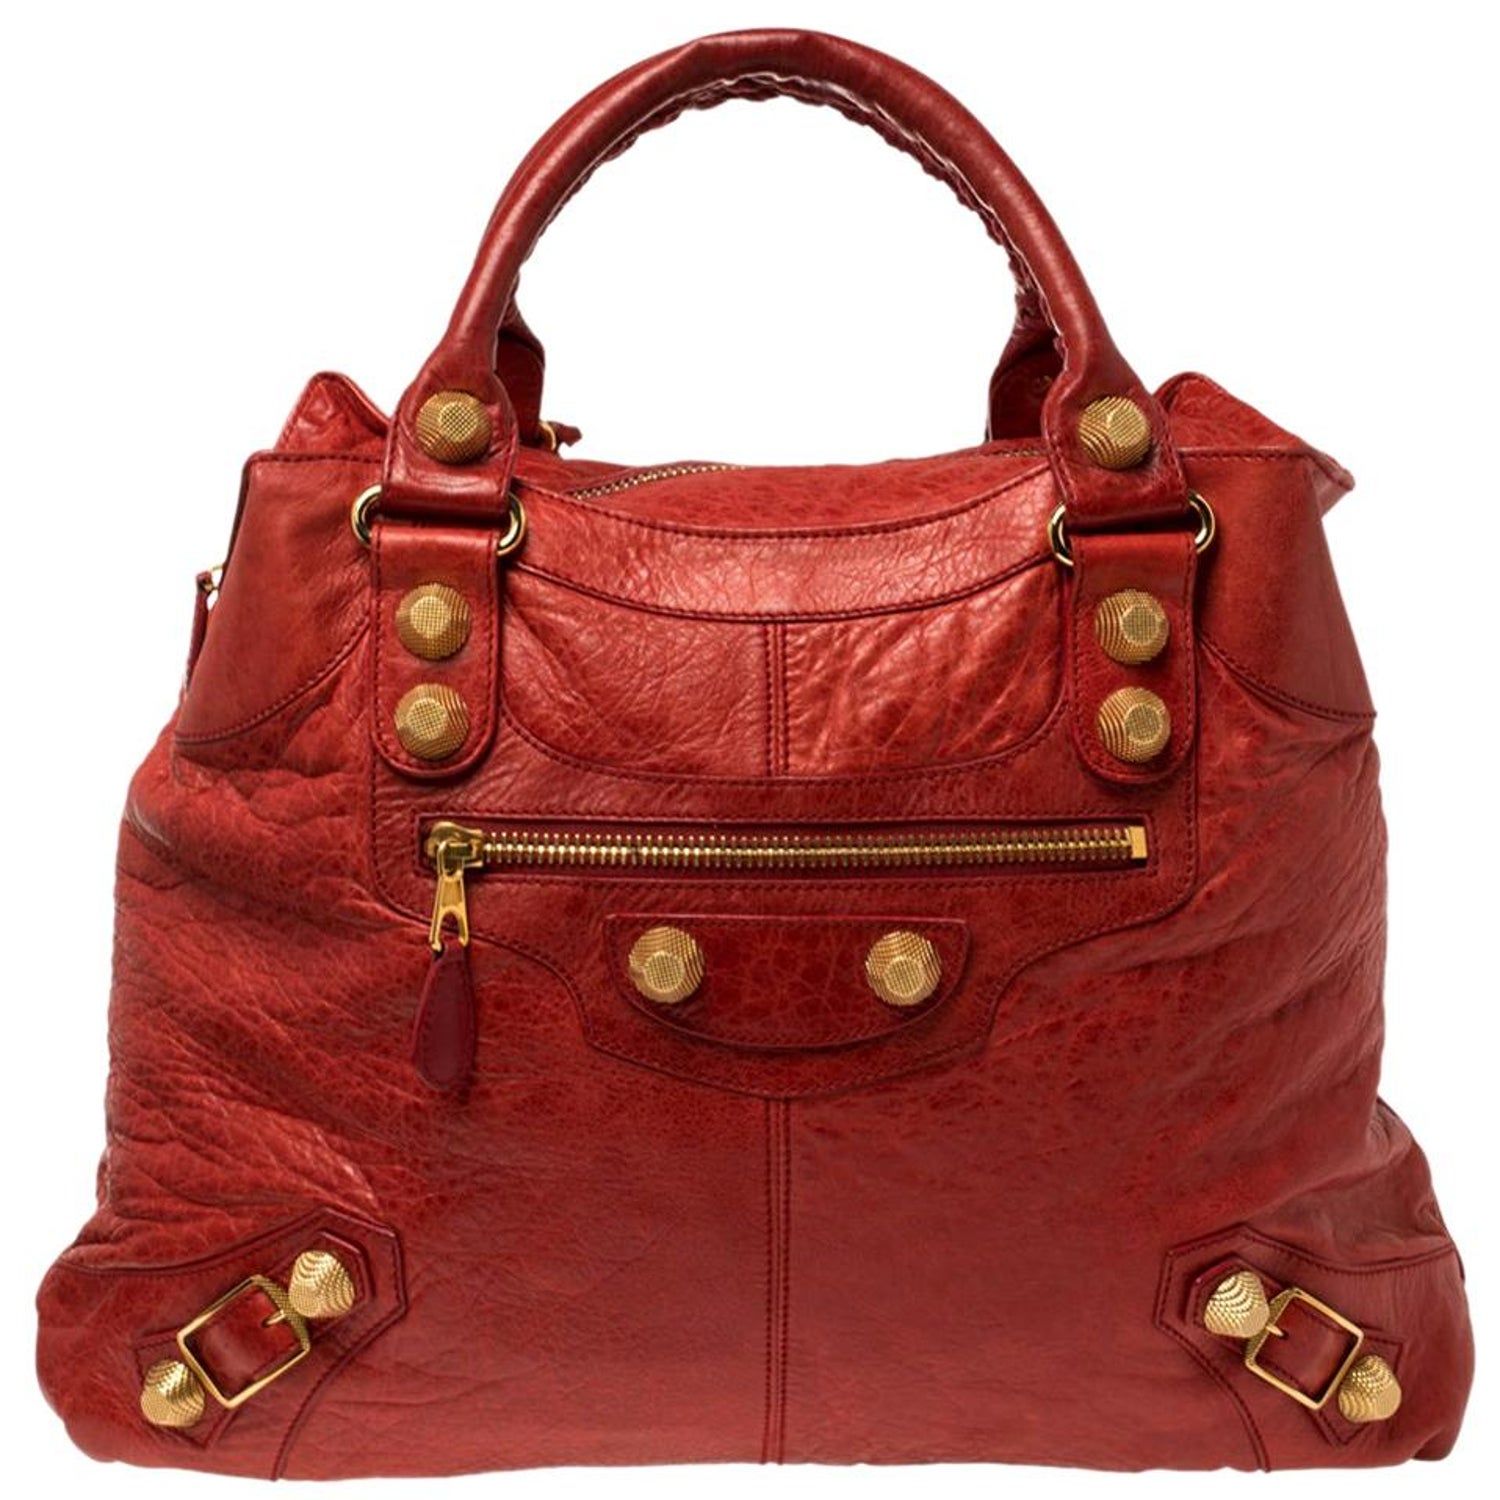 Balenciaga Midday - For Sale on 1stDibs | balenciaga midday bag, balenciaga  led purse